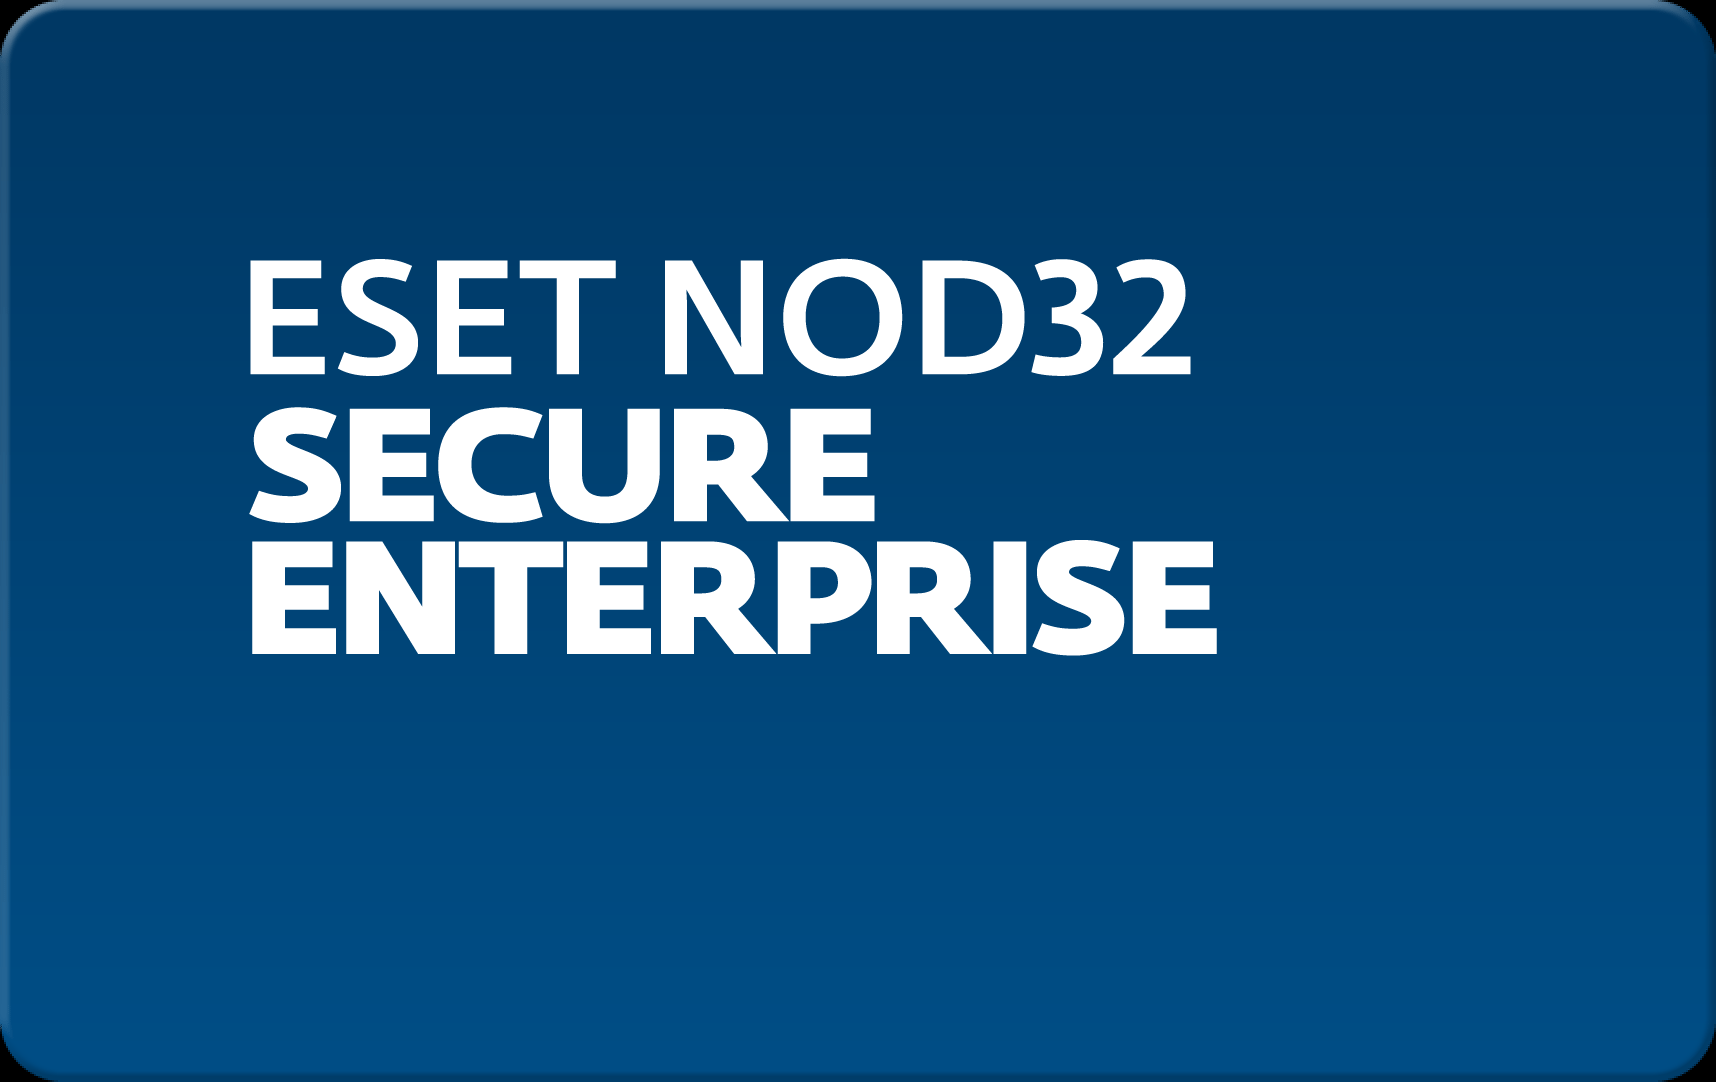        Eset NOD32 Secure Enterprise  82  NOD32-ESE-NS-1-82  #1